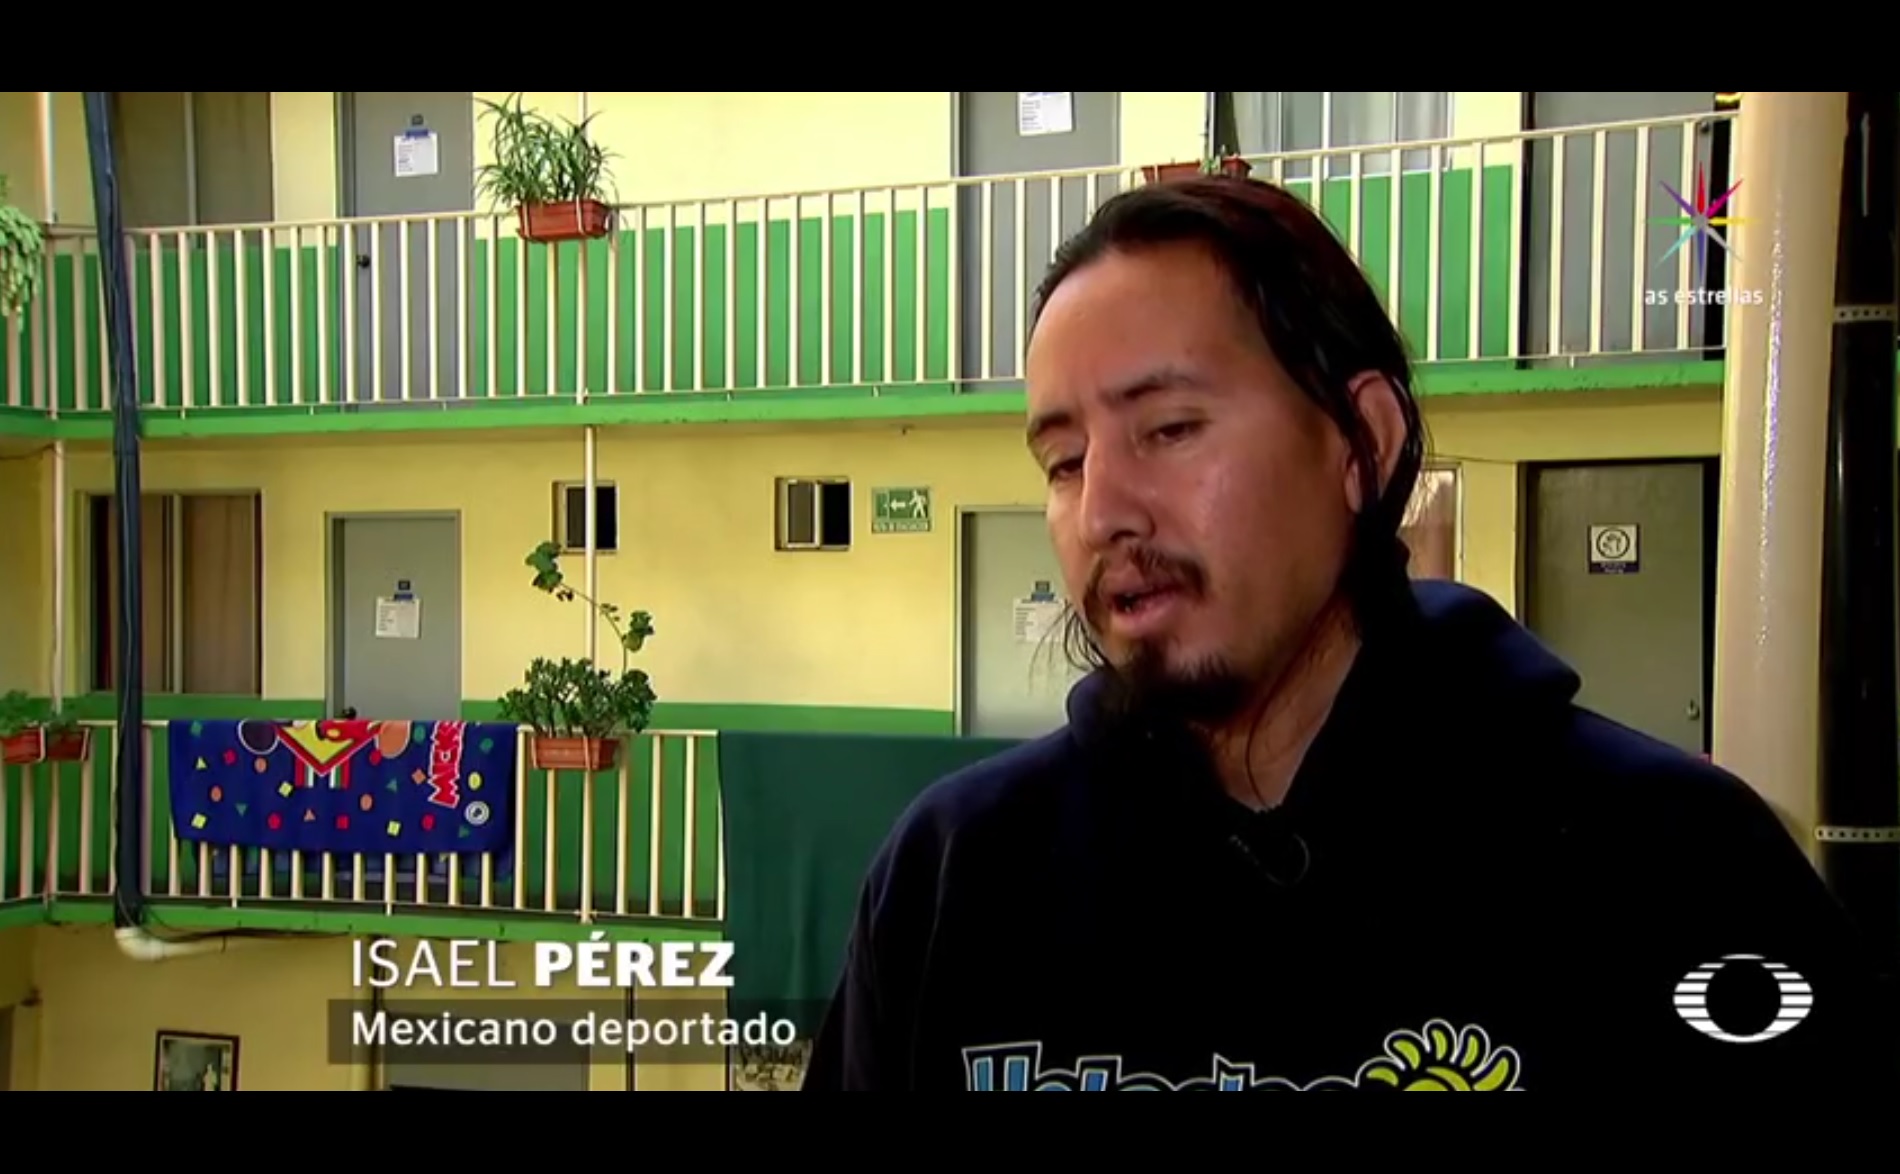 Tras cuatro días de permanecer en el Centro de Detención de Adelanto, en California, Isael fue deportado a Tijuana. (Noticieros Televisa)